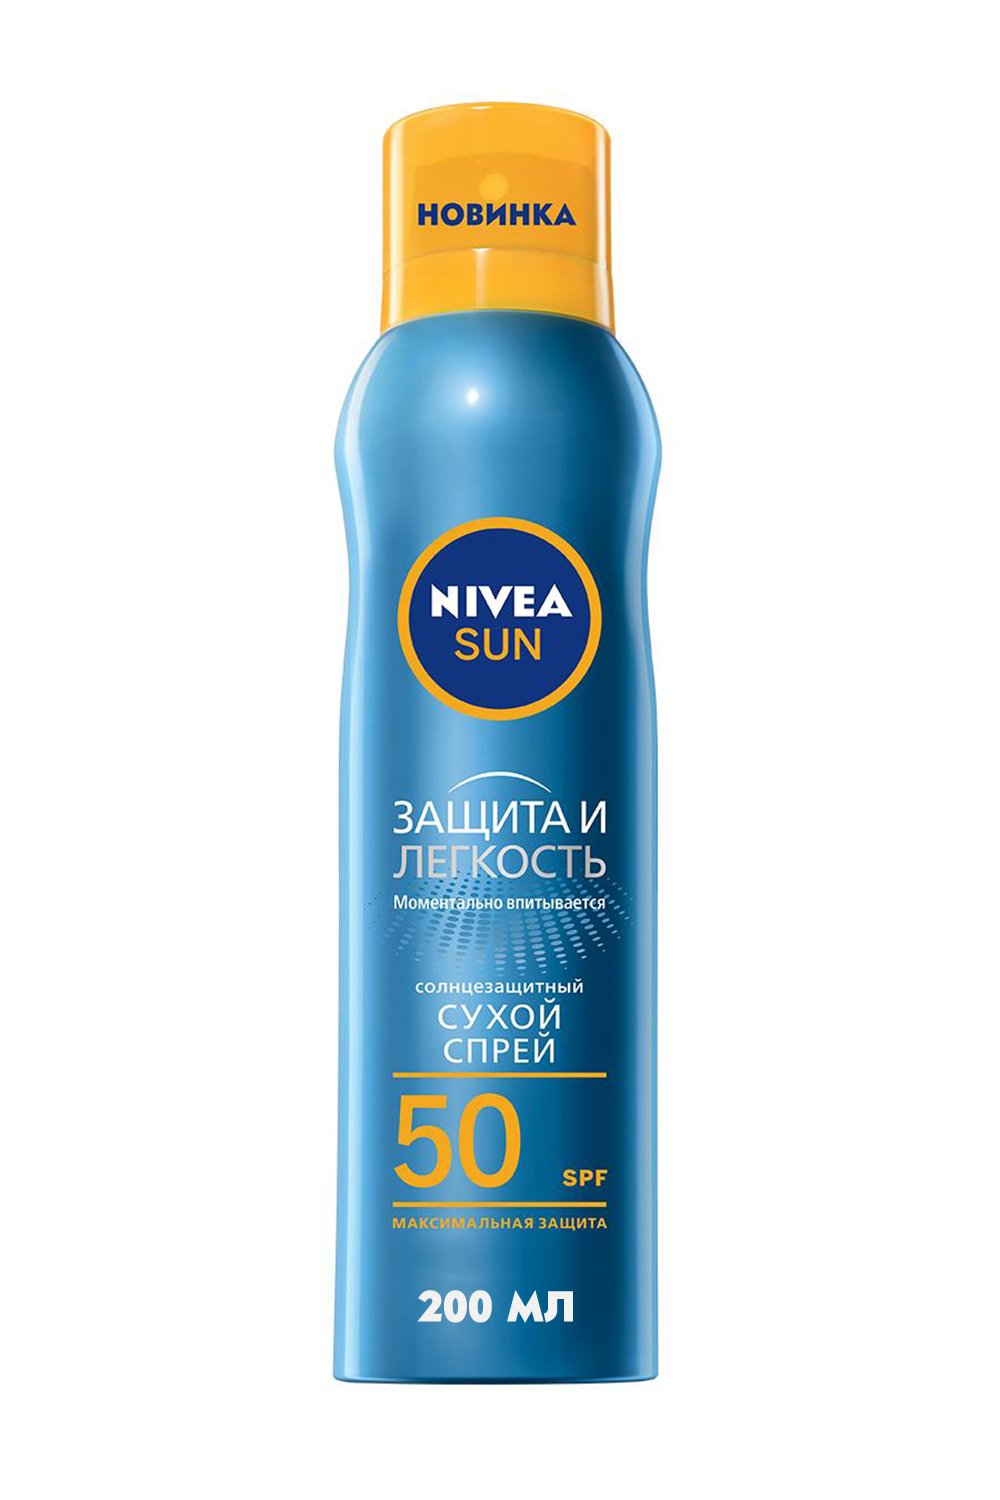 Солнцезащитный сухой спрей Nivea Sun Защита и легкость, SPF 50, 200 мл - фото 1